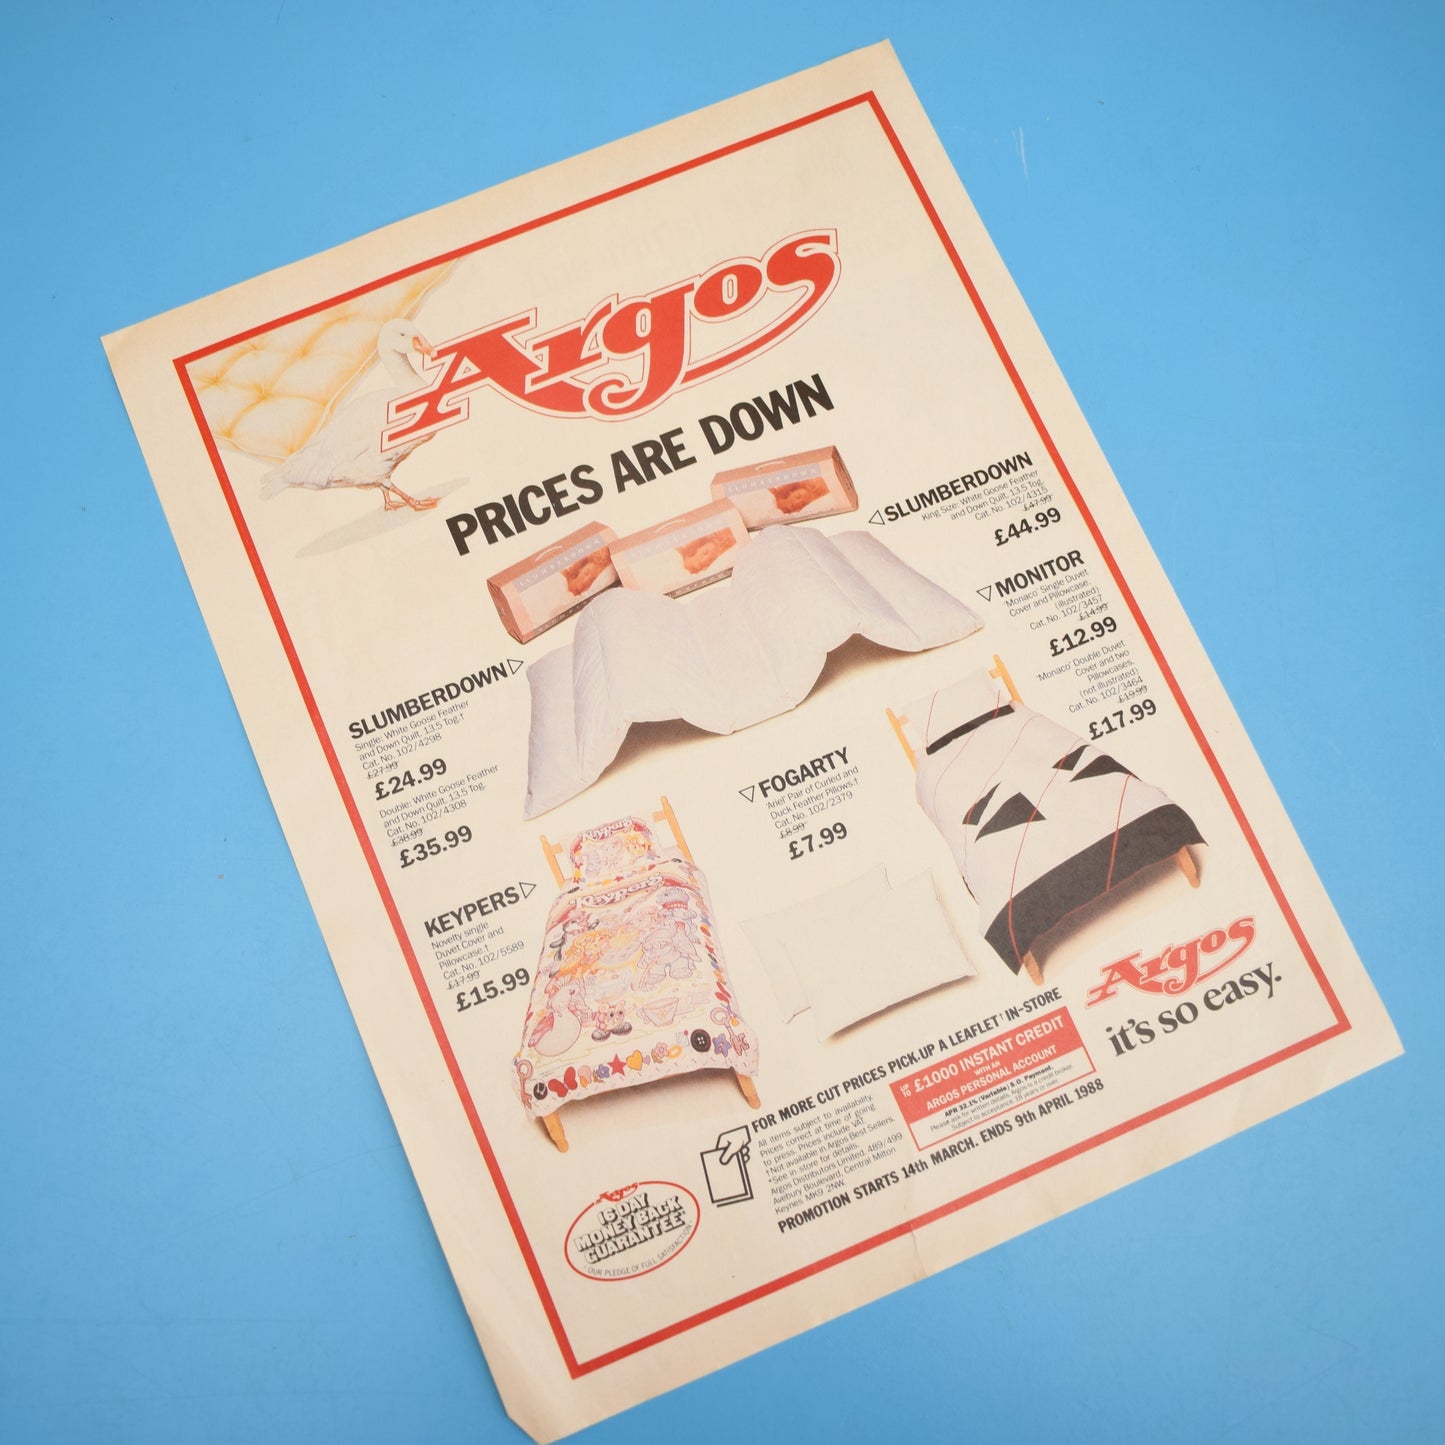 Vintage 1980s Adverts - Homeware